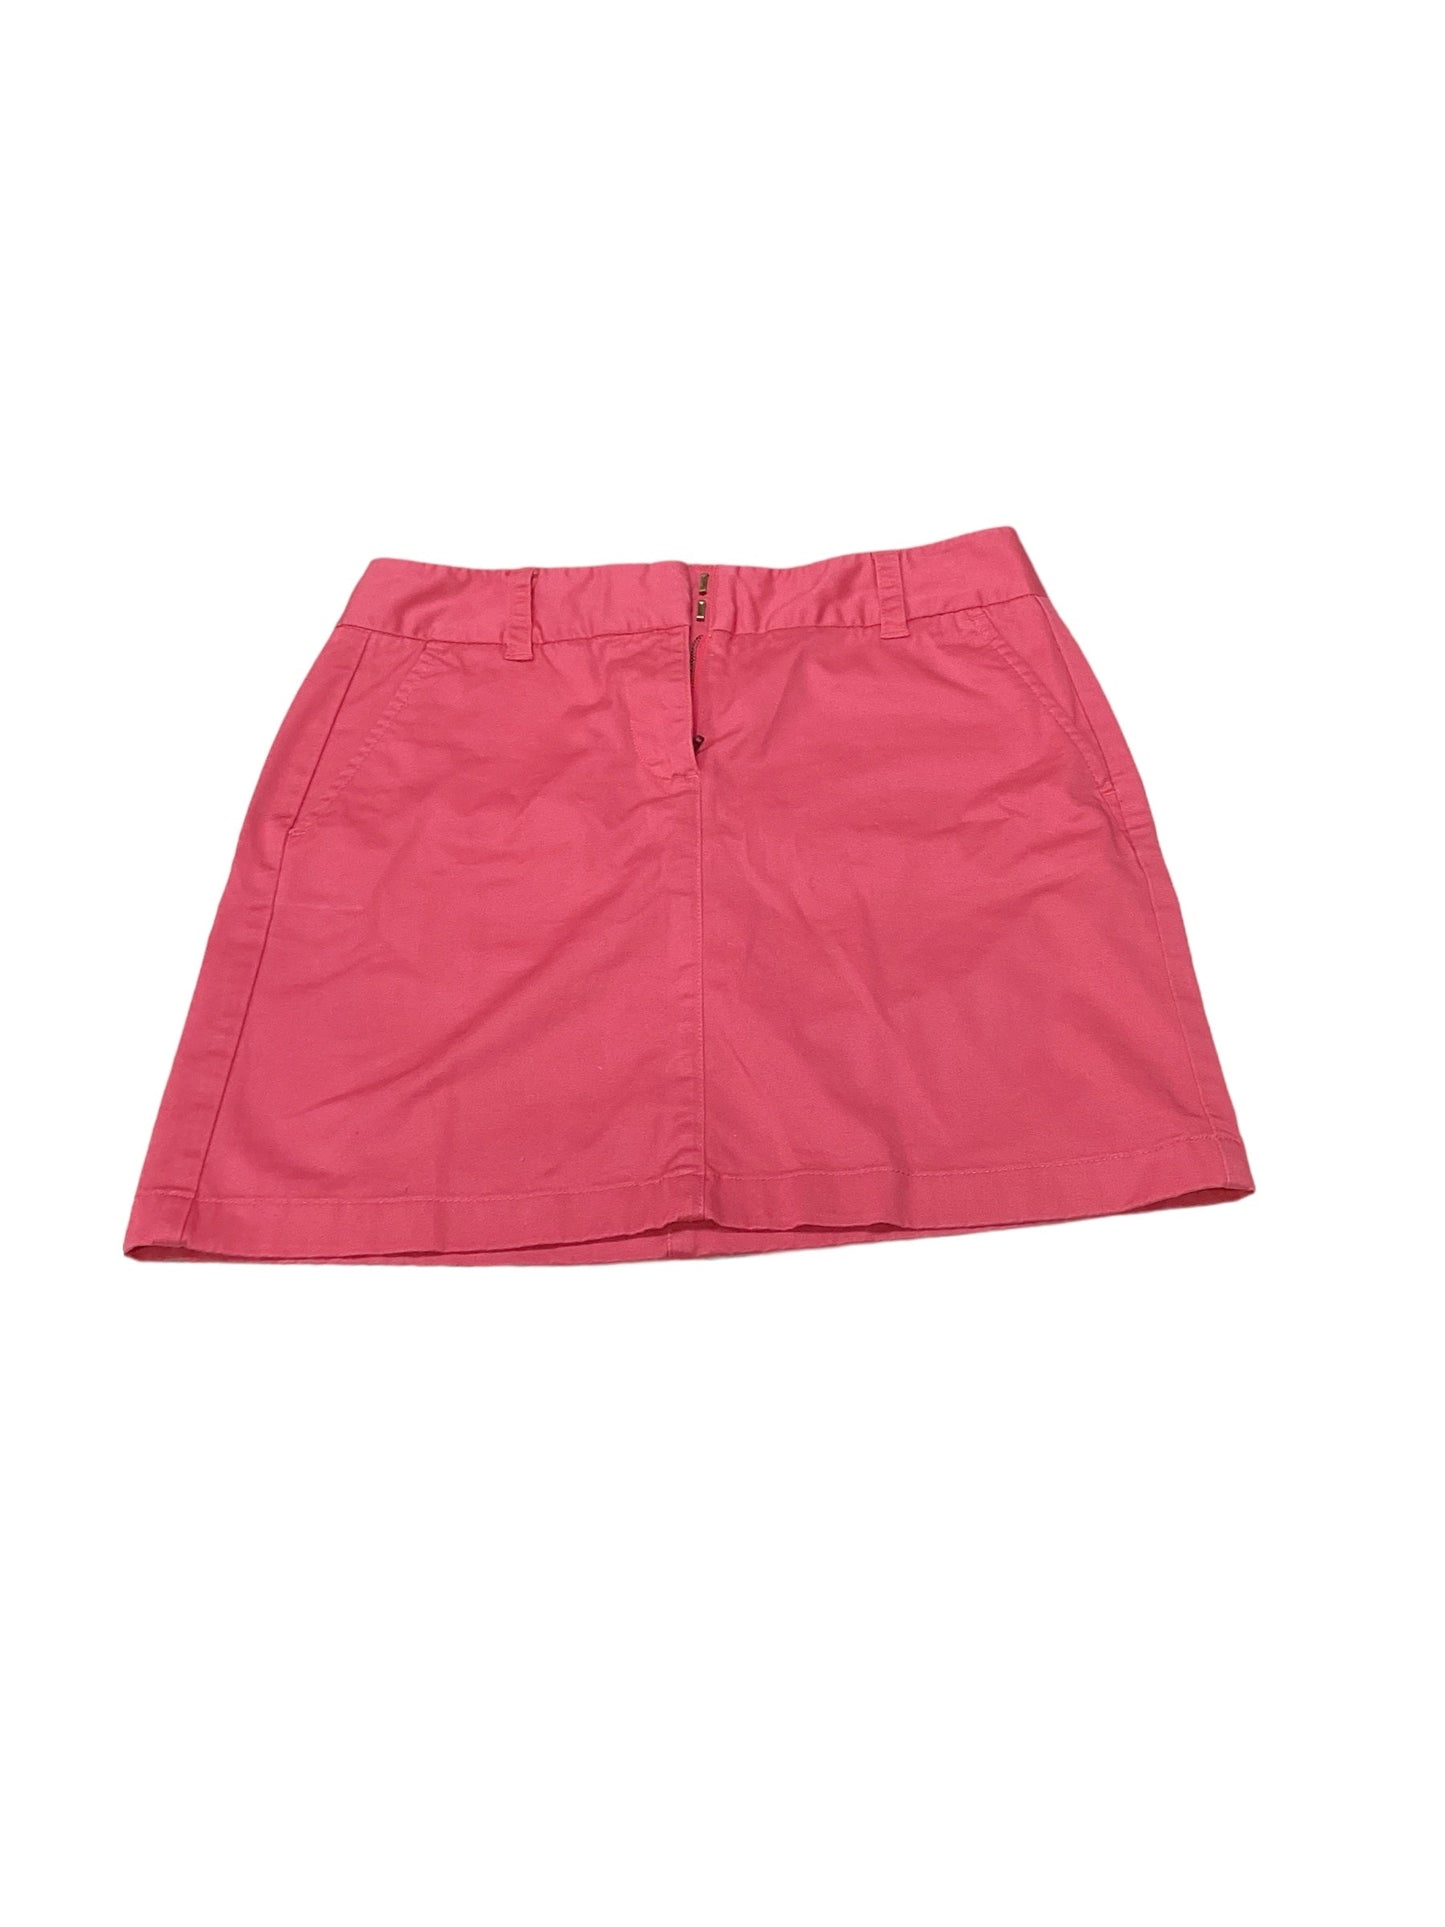 Skirt Mini & Short By Vineyard Vines  Size: 2